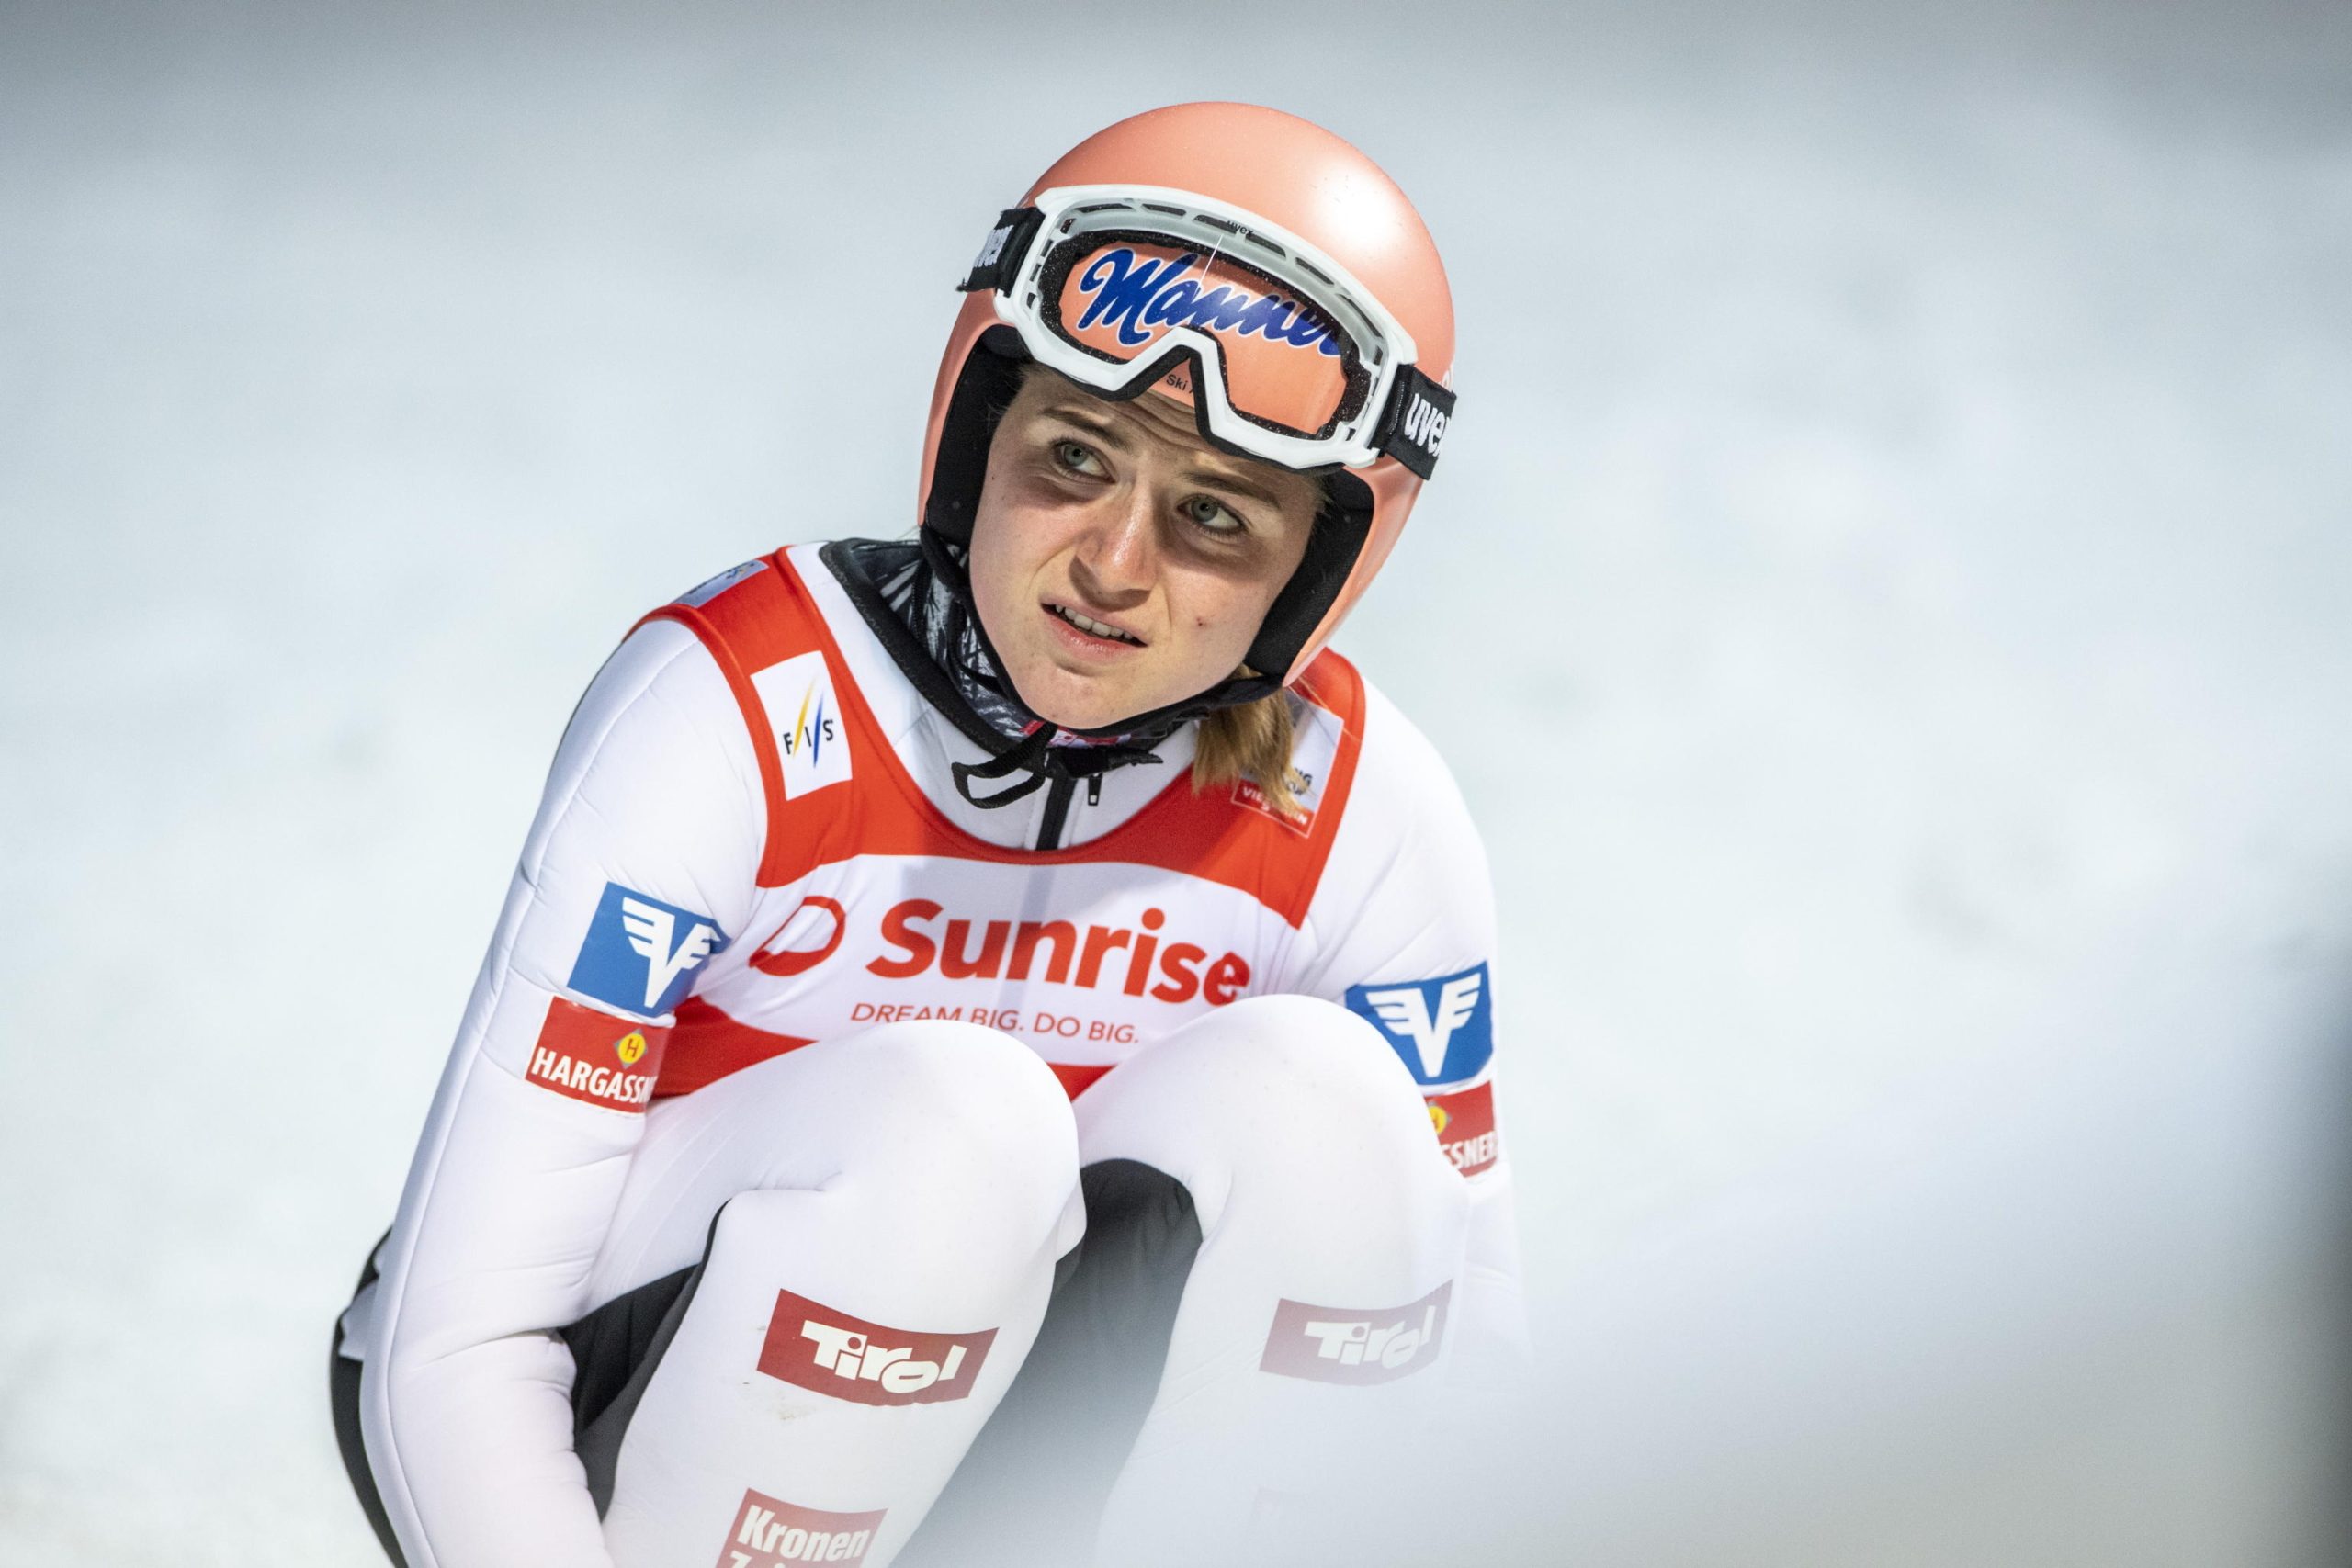 La reazione dell'austriaca Marita Kramer dopo il salto compiuto durante la Coppa del Mondo di salto con gli sci in Svizzera